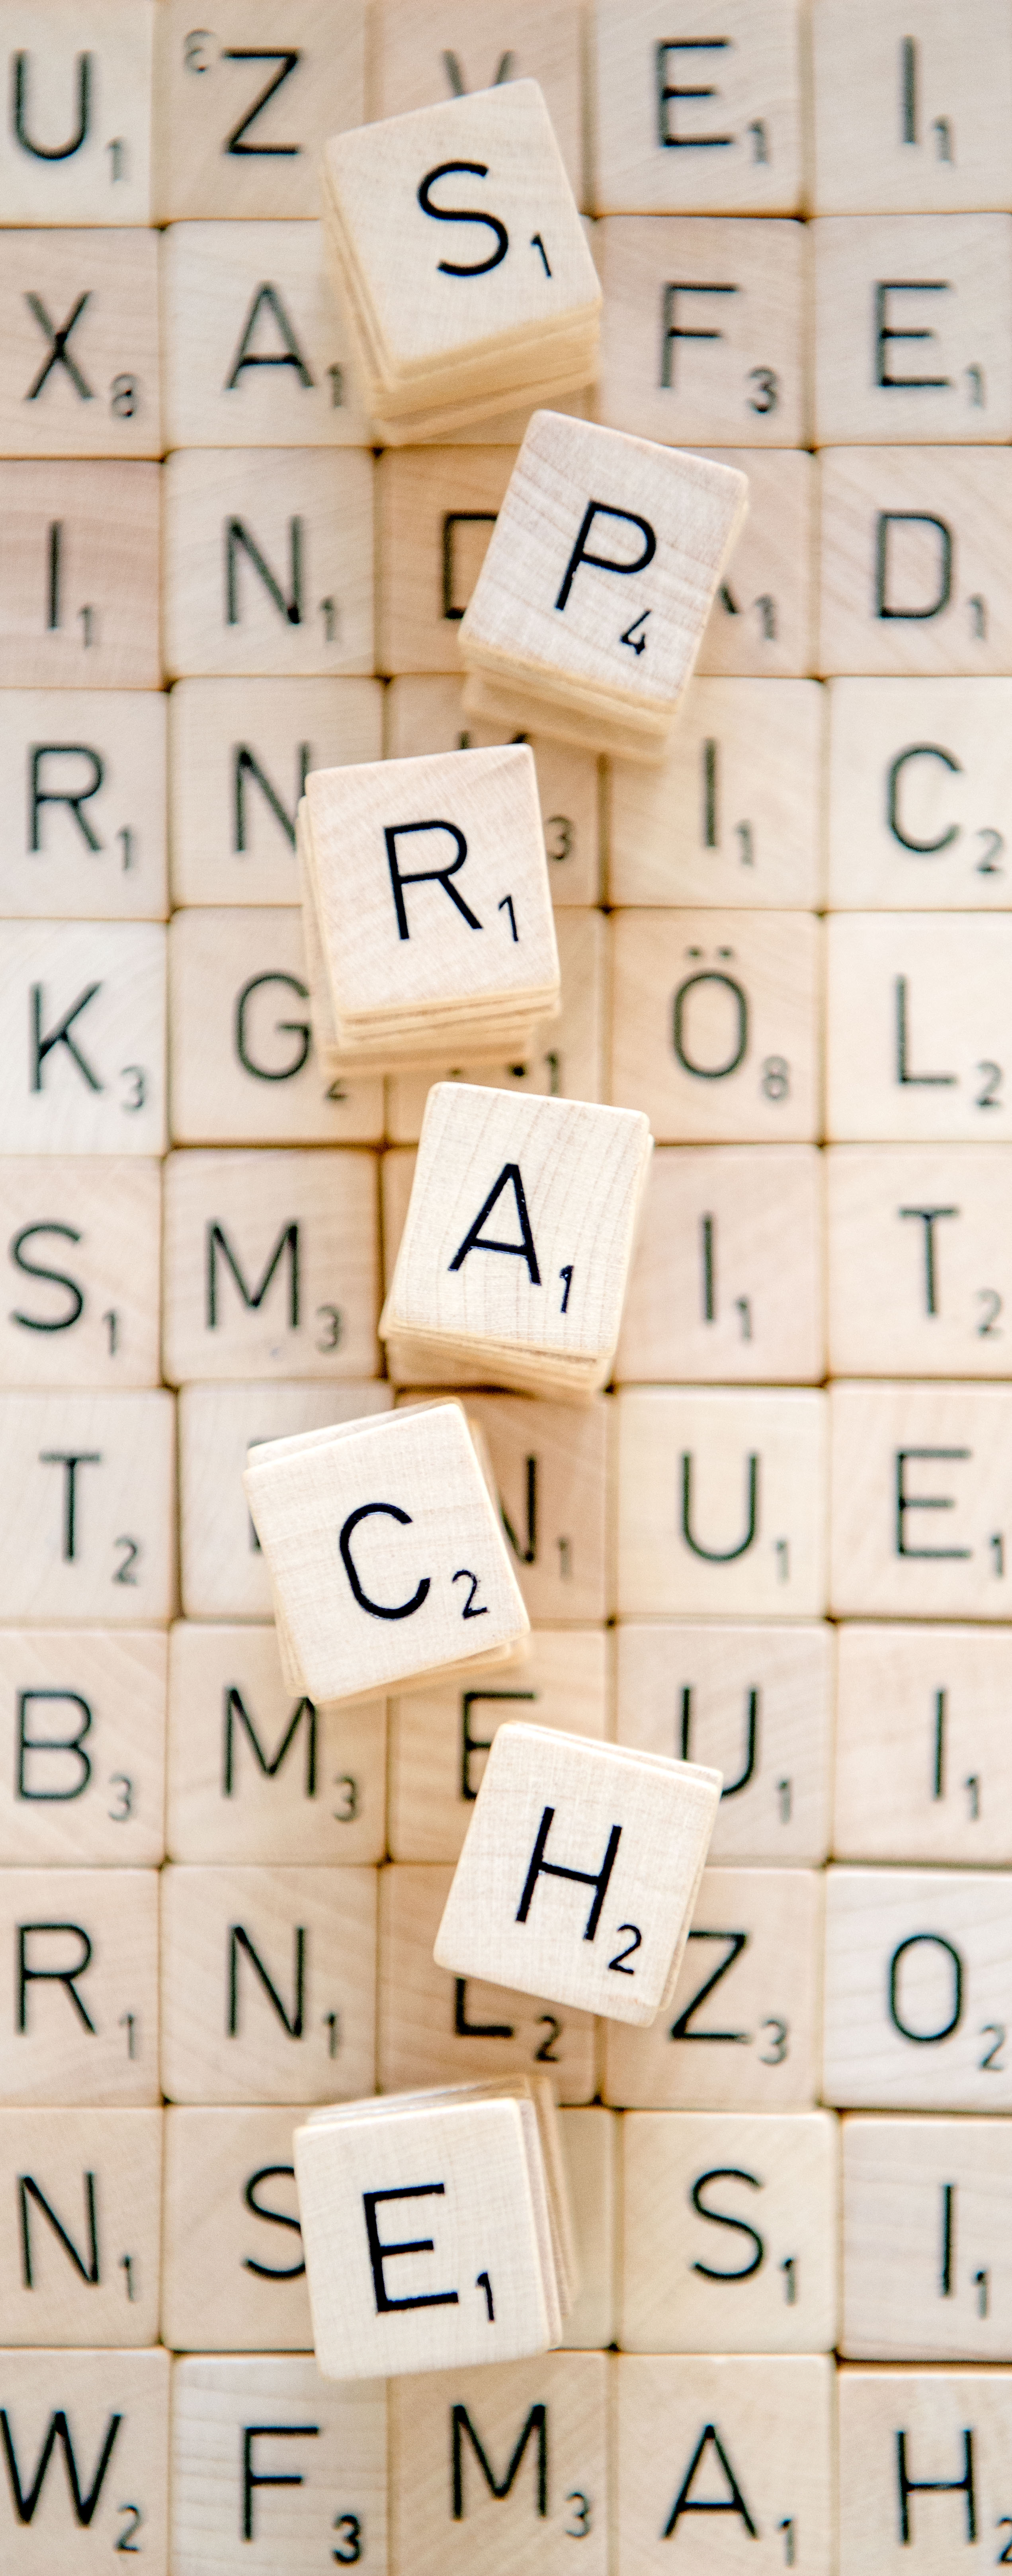 Spielsteine aus dem Brettspiel Scrabble formen das Wort "Sprache".